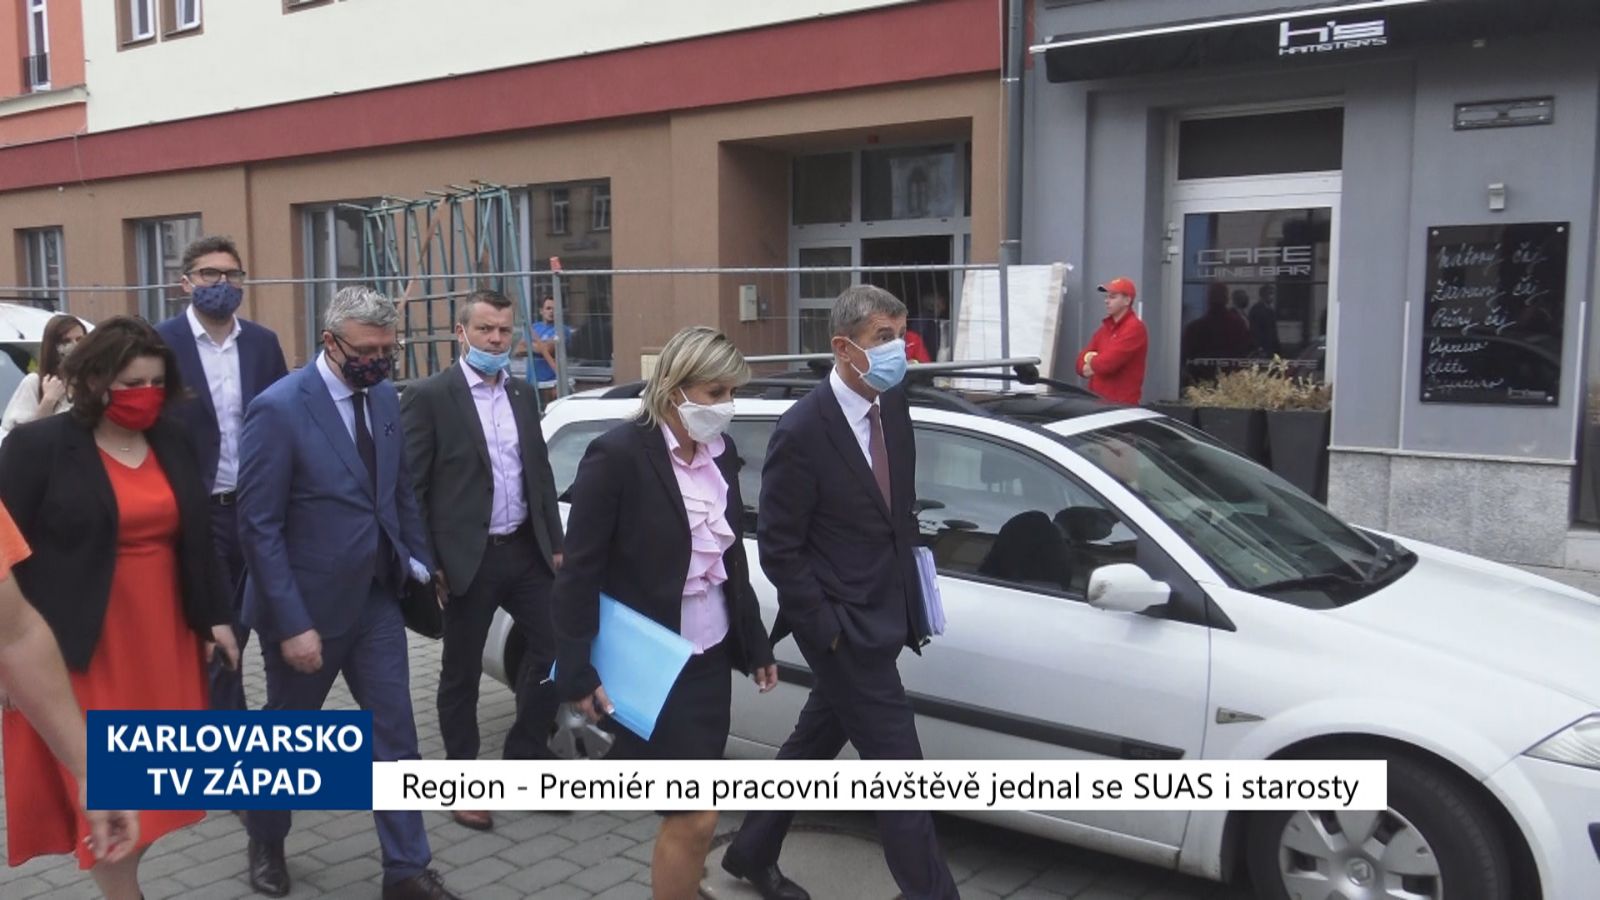 Region: Premiér na pracovní návštěvě jednal se SUAS i starosty (TV Západ)